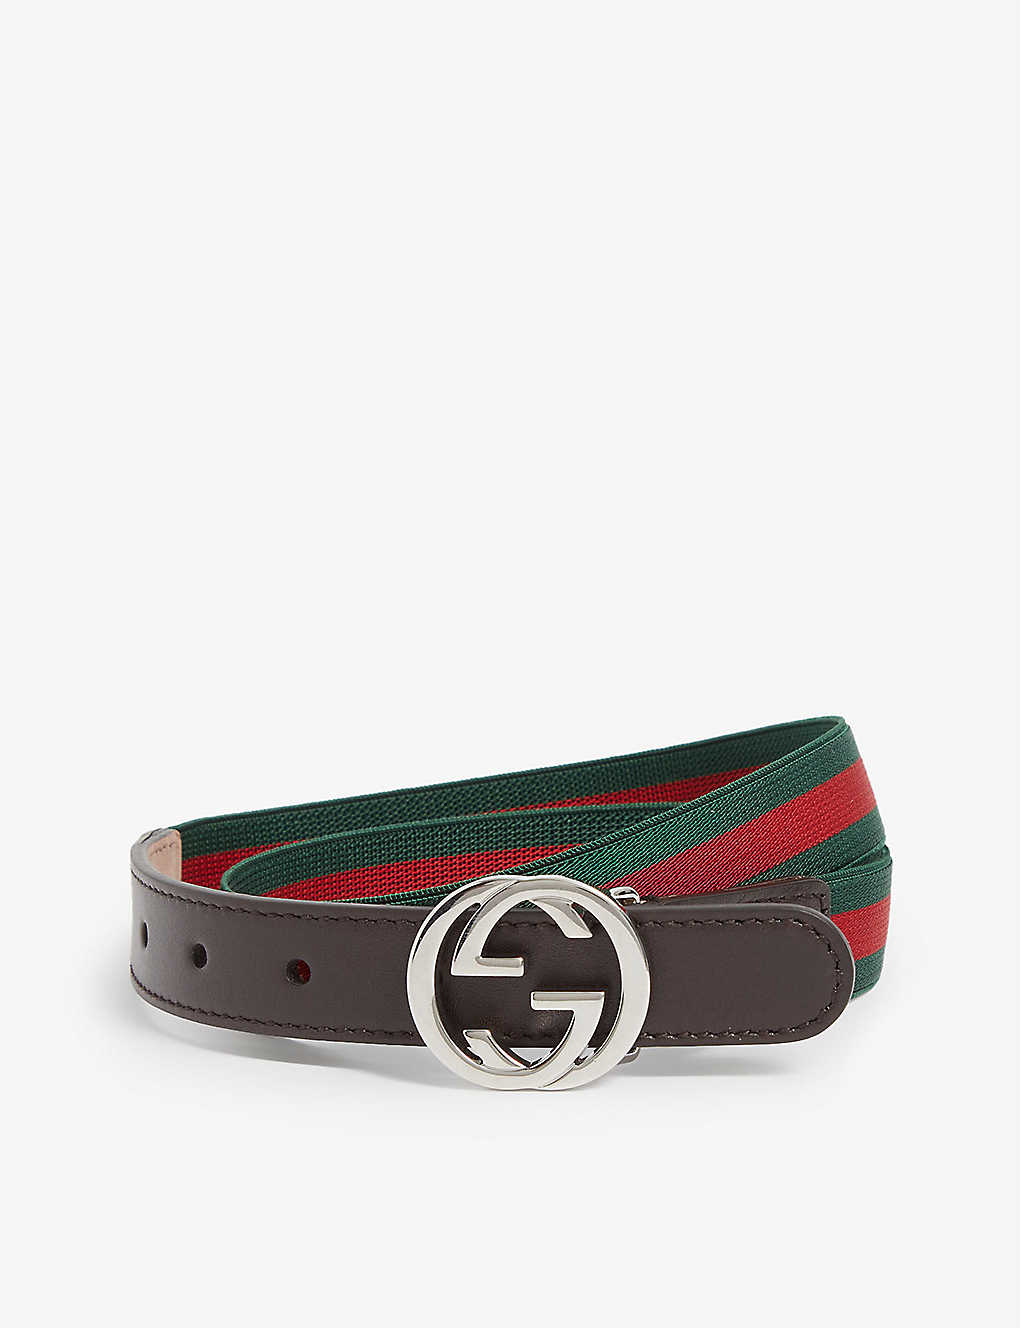 GG Web stripe woven belt 4-8 years Selfridges & Co Boys Accessories Belts 